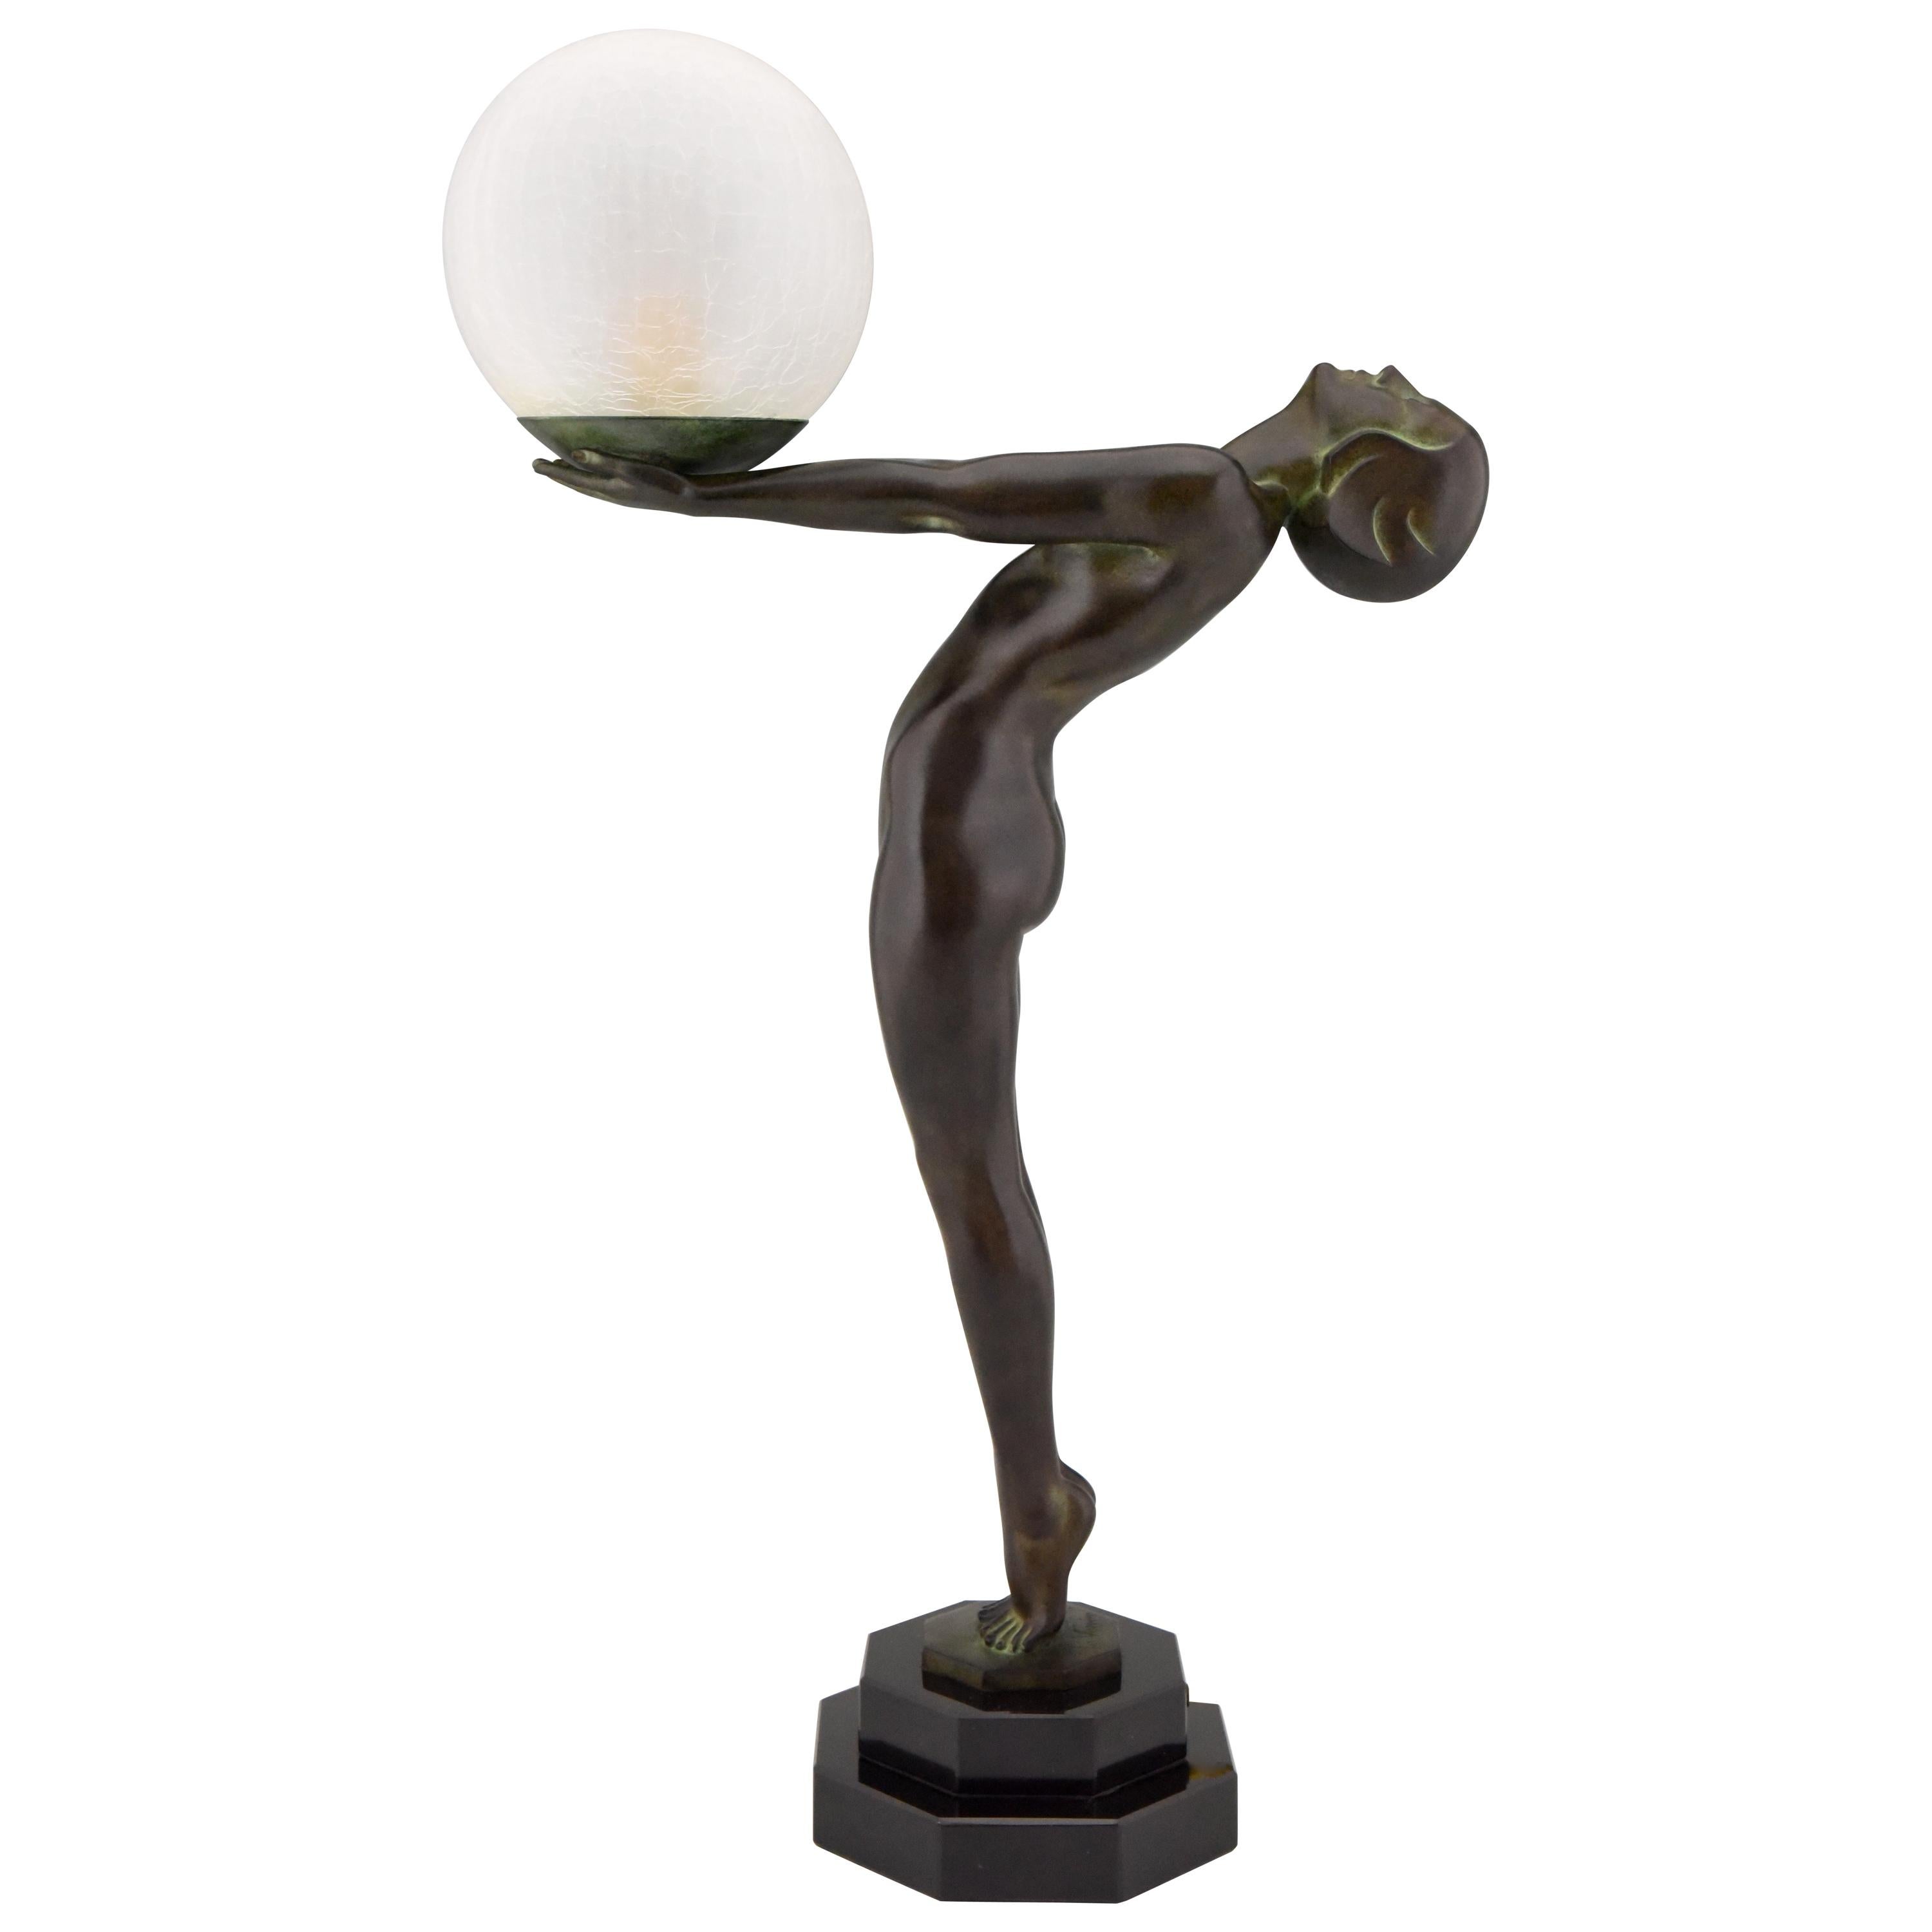 Beeindruckendes Paar Art-Déco-Tischlampen in Form eines stehenden Aktes mit Glasschirm, Lumina.
H. 65 cm oder 25,6 Zoll groß.
Entworfen von Max Le Verrier in Frankreich, 1928.
Originaler posthumer zeitgenössischer Guss in der Gießerei Le Verrier.